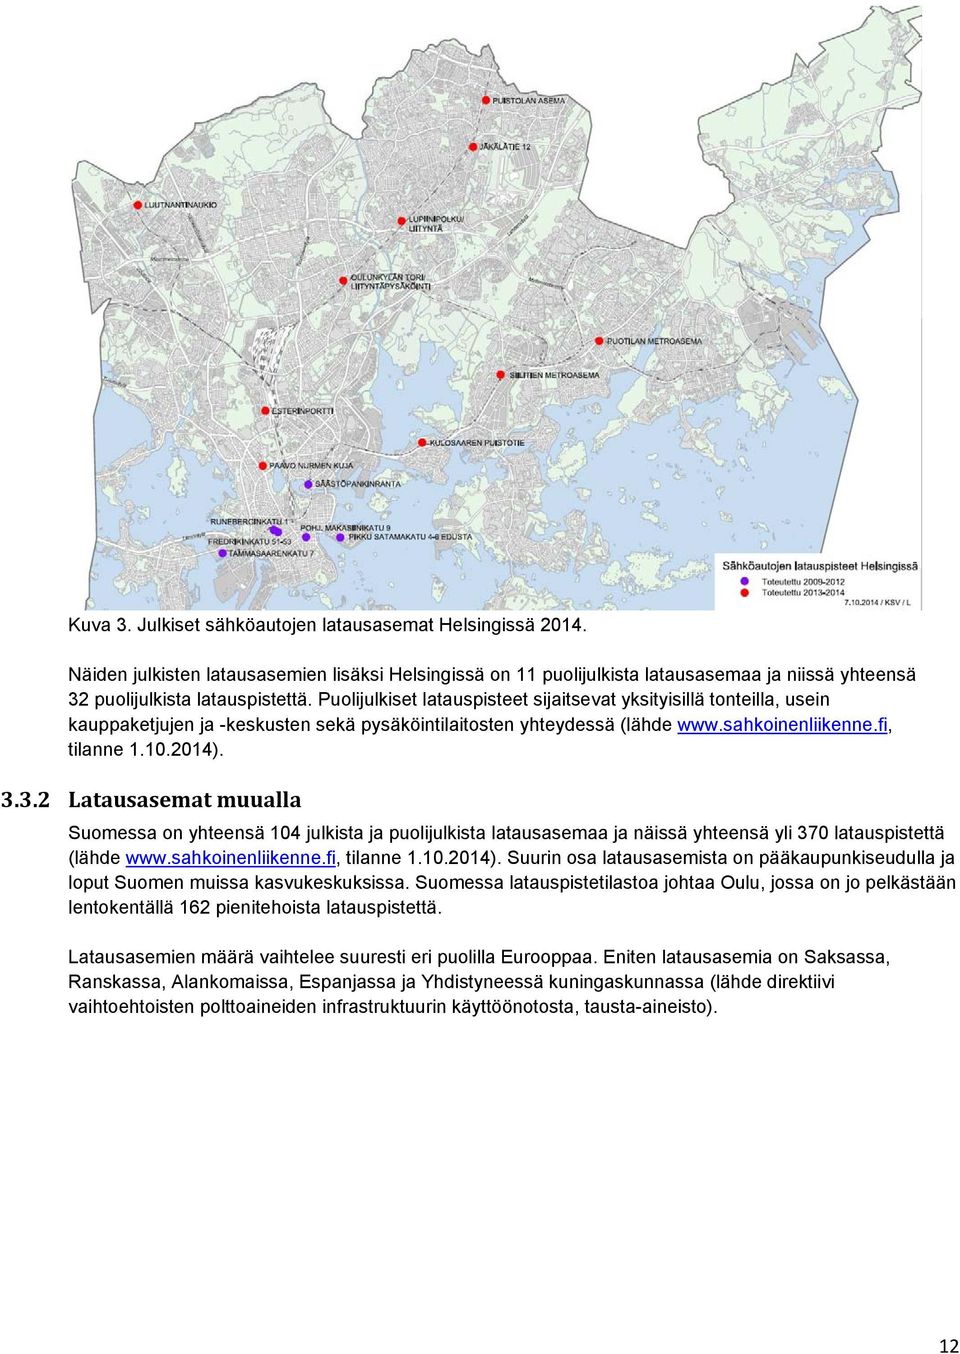 3.2 Latausasemat muualla Suomessa on yhteensä 104 julkista ja puolijulkista latausasemaa ja näissä yhteensä yli 370 latauspistettä (lähde www.sahkoinenliikenne.fi, tilanne 1.10.2014).